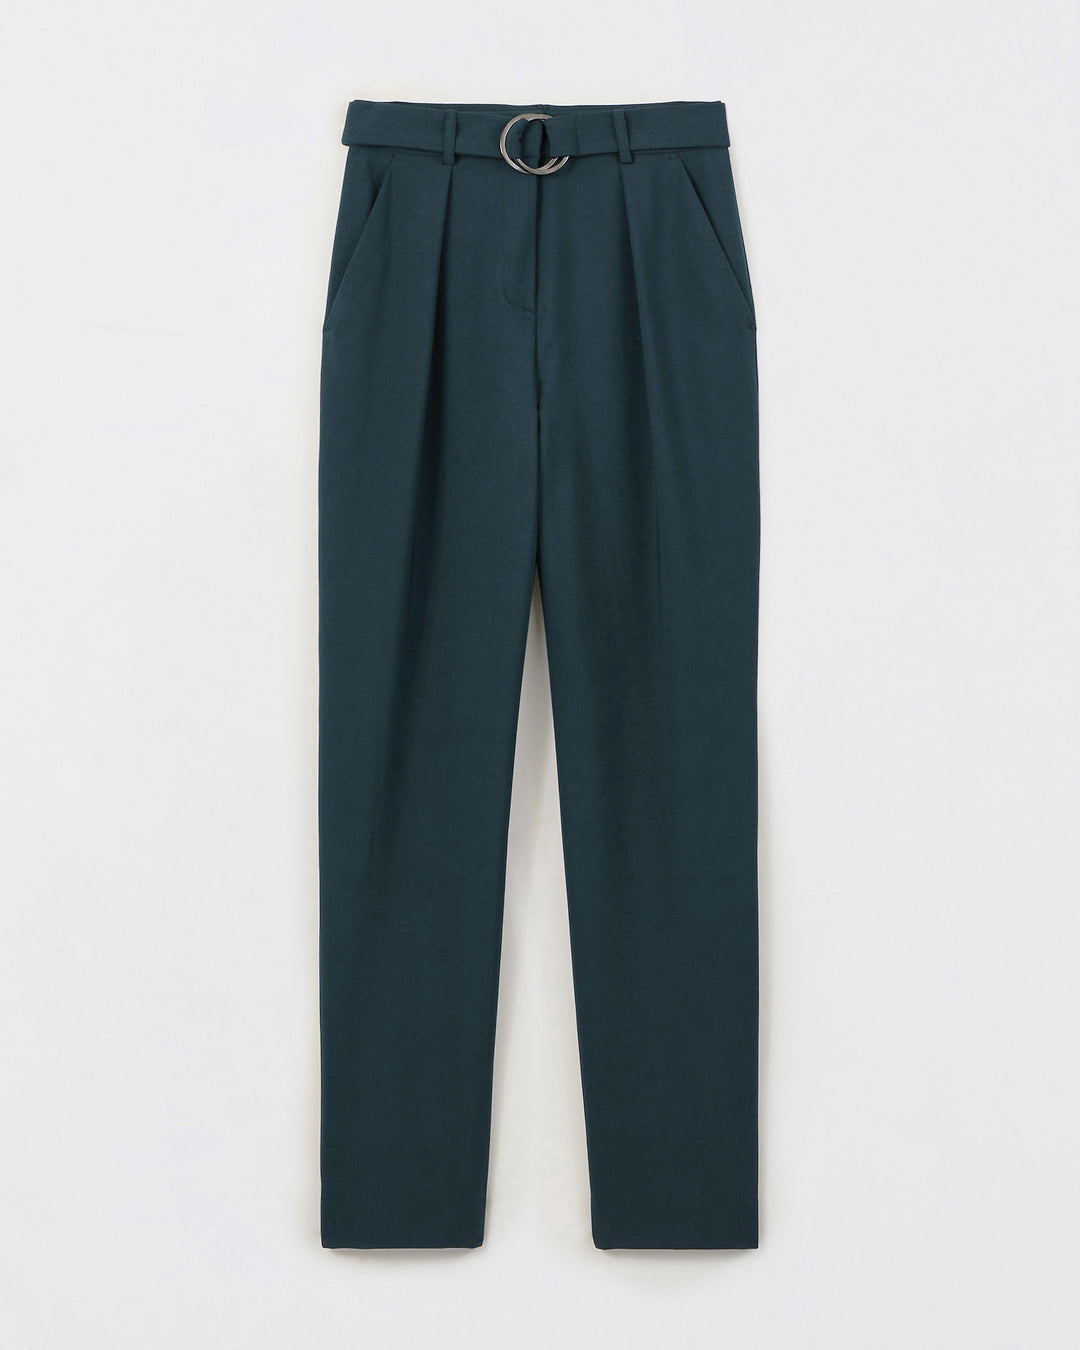 Pantalon-de-tailleur-vert-coupe-7-8eme-taille-haute-plis-sous-la-ceinture-deux-poches-a-l-italienne-ceinture-assortie-ton-sur-ton-17H10-tailleurs-pour-femme-paris-